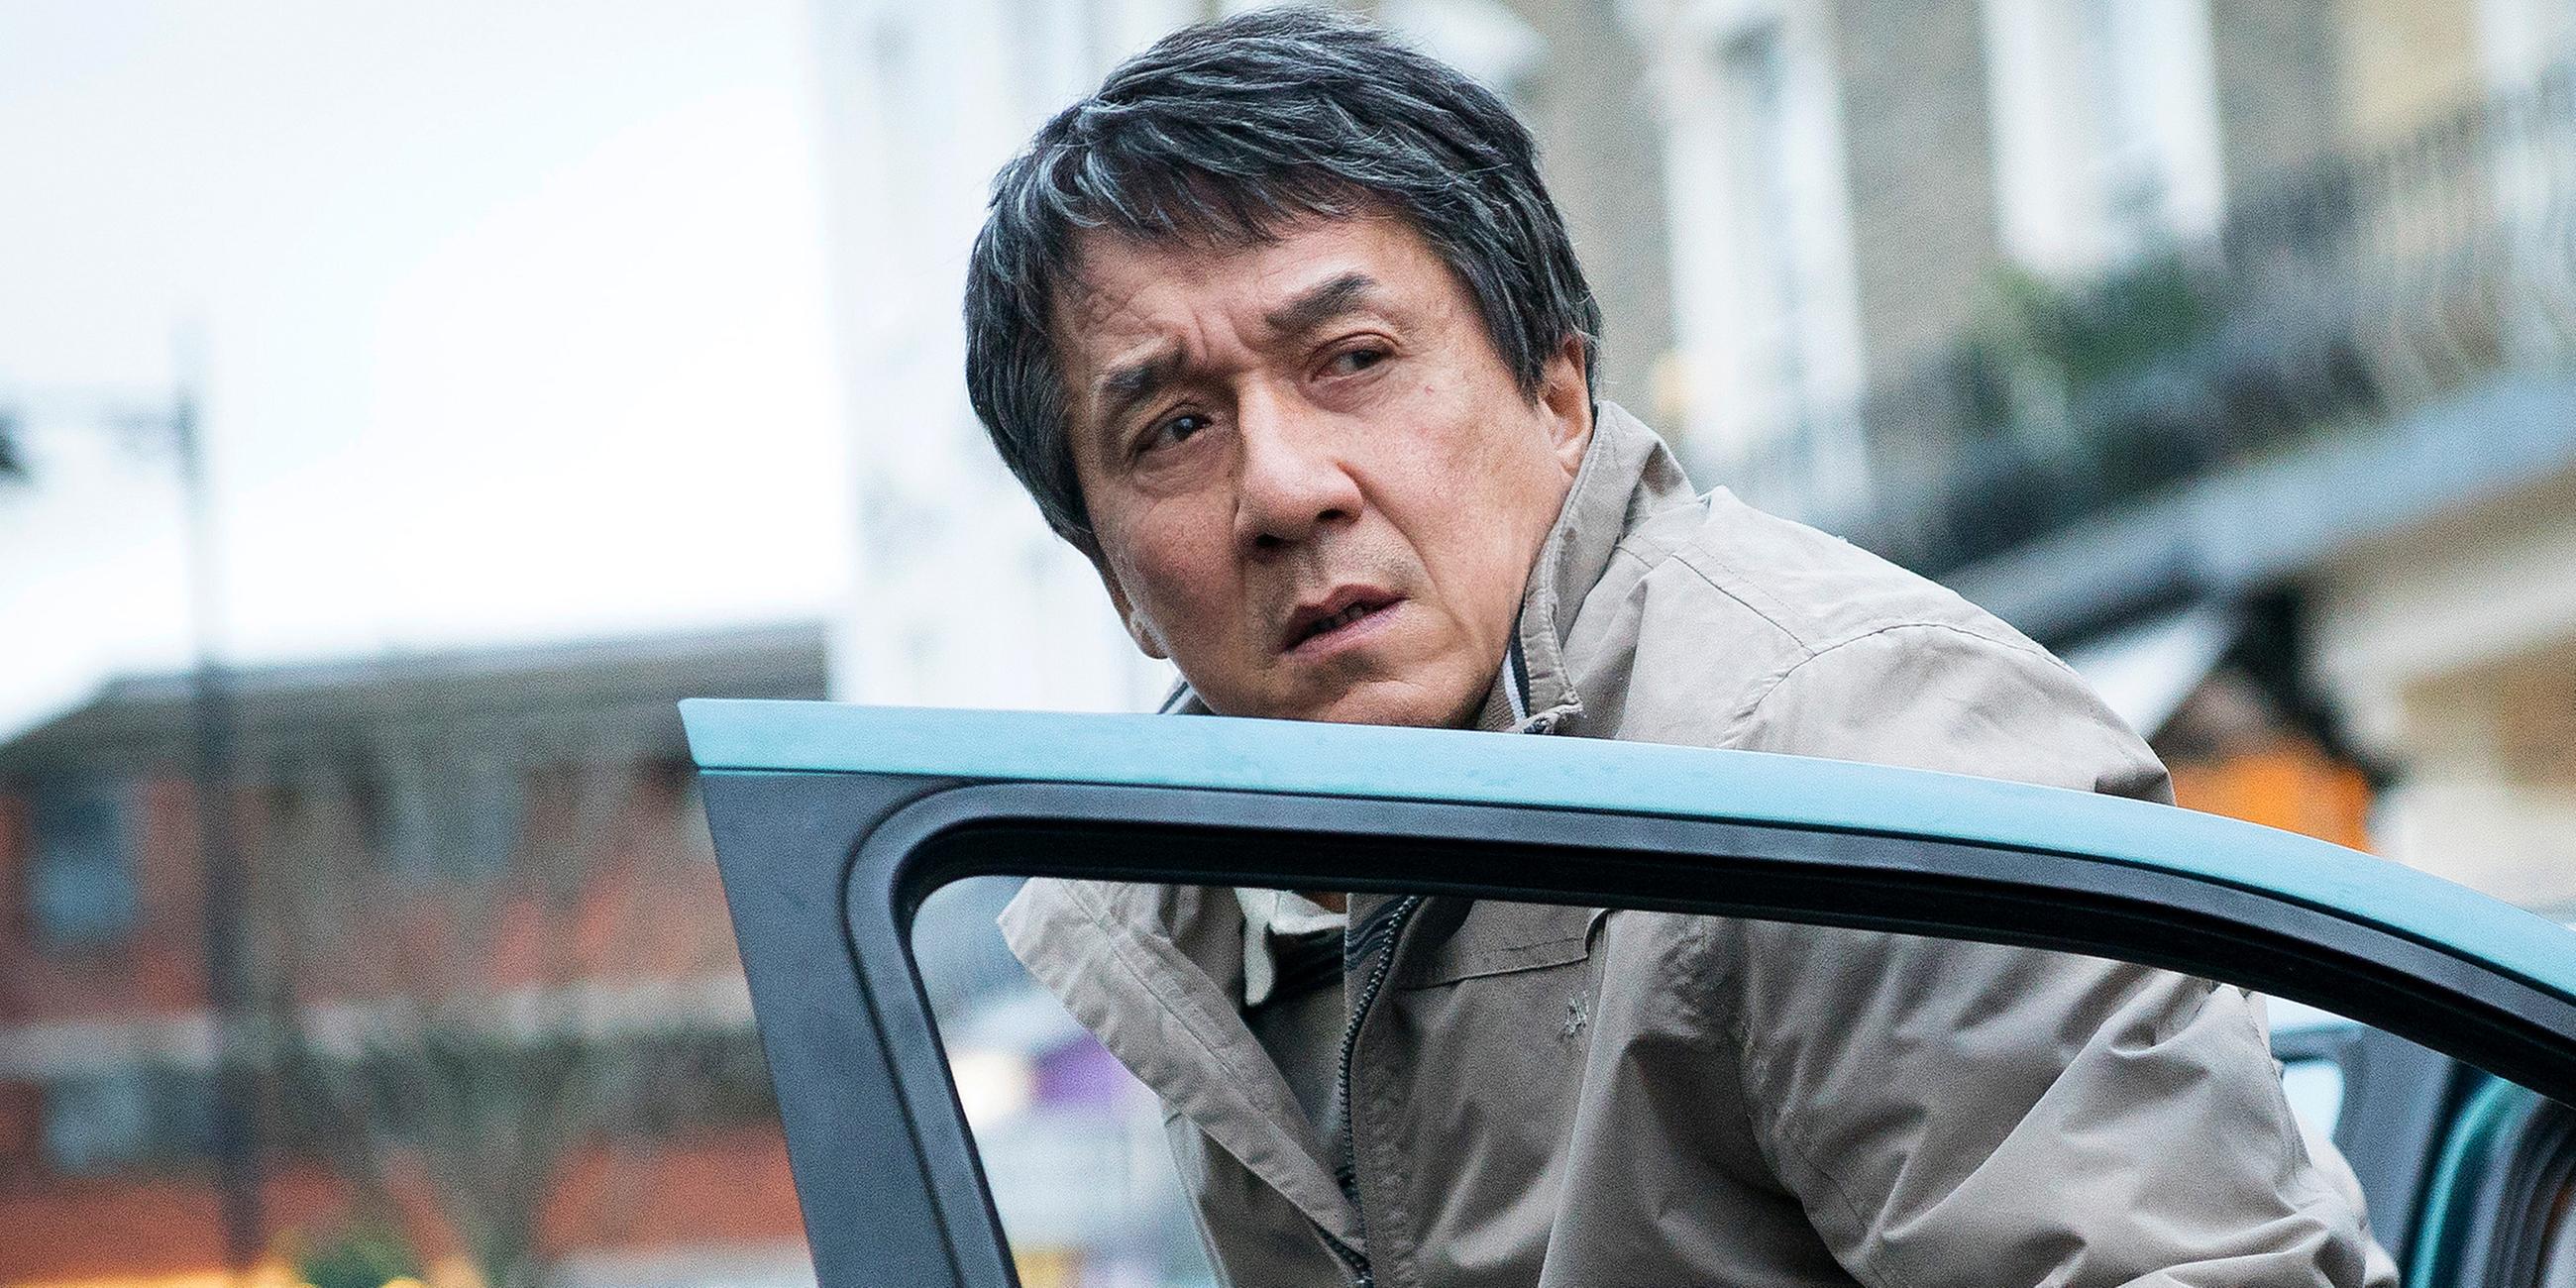 Quan Ngoc Minh (Jackie Chan) trägt eine Windjacke, ist mit ärgerlichem Blick aus dem Auto ausgestiegen und steht noch hinter der geöffneten Fahrertür. Im Hintergrund sind unscharf eine Reihe am Straßenrand geparkter Autos sowie eine Häuserfront zu erkennen.